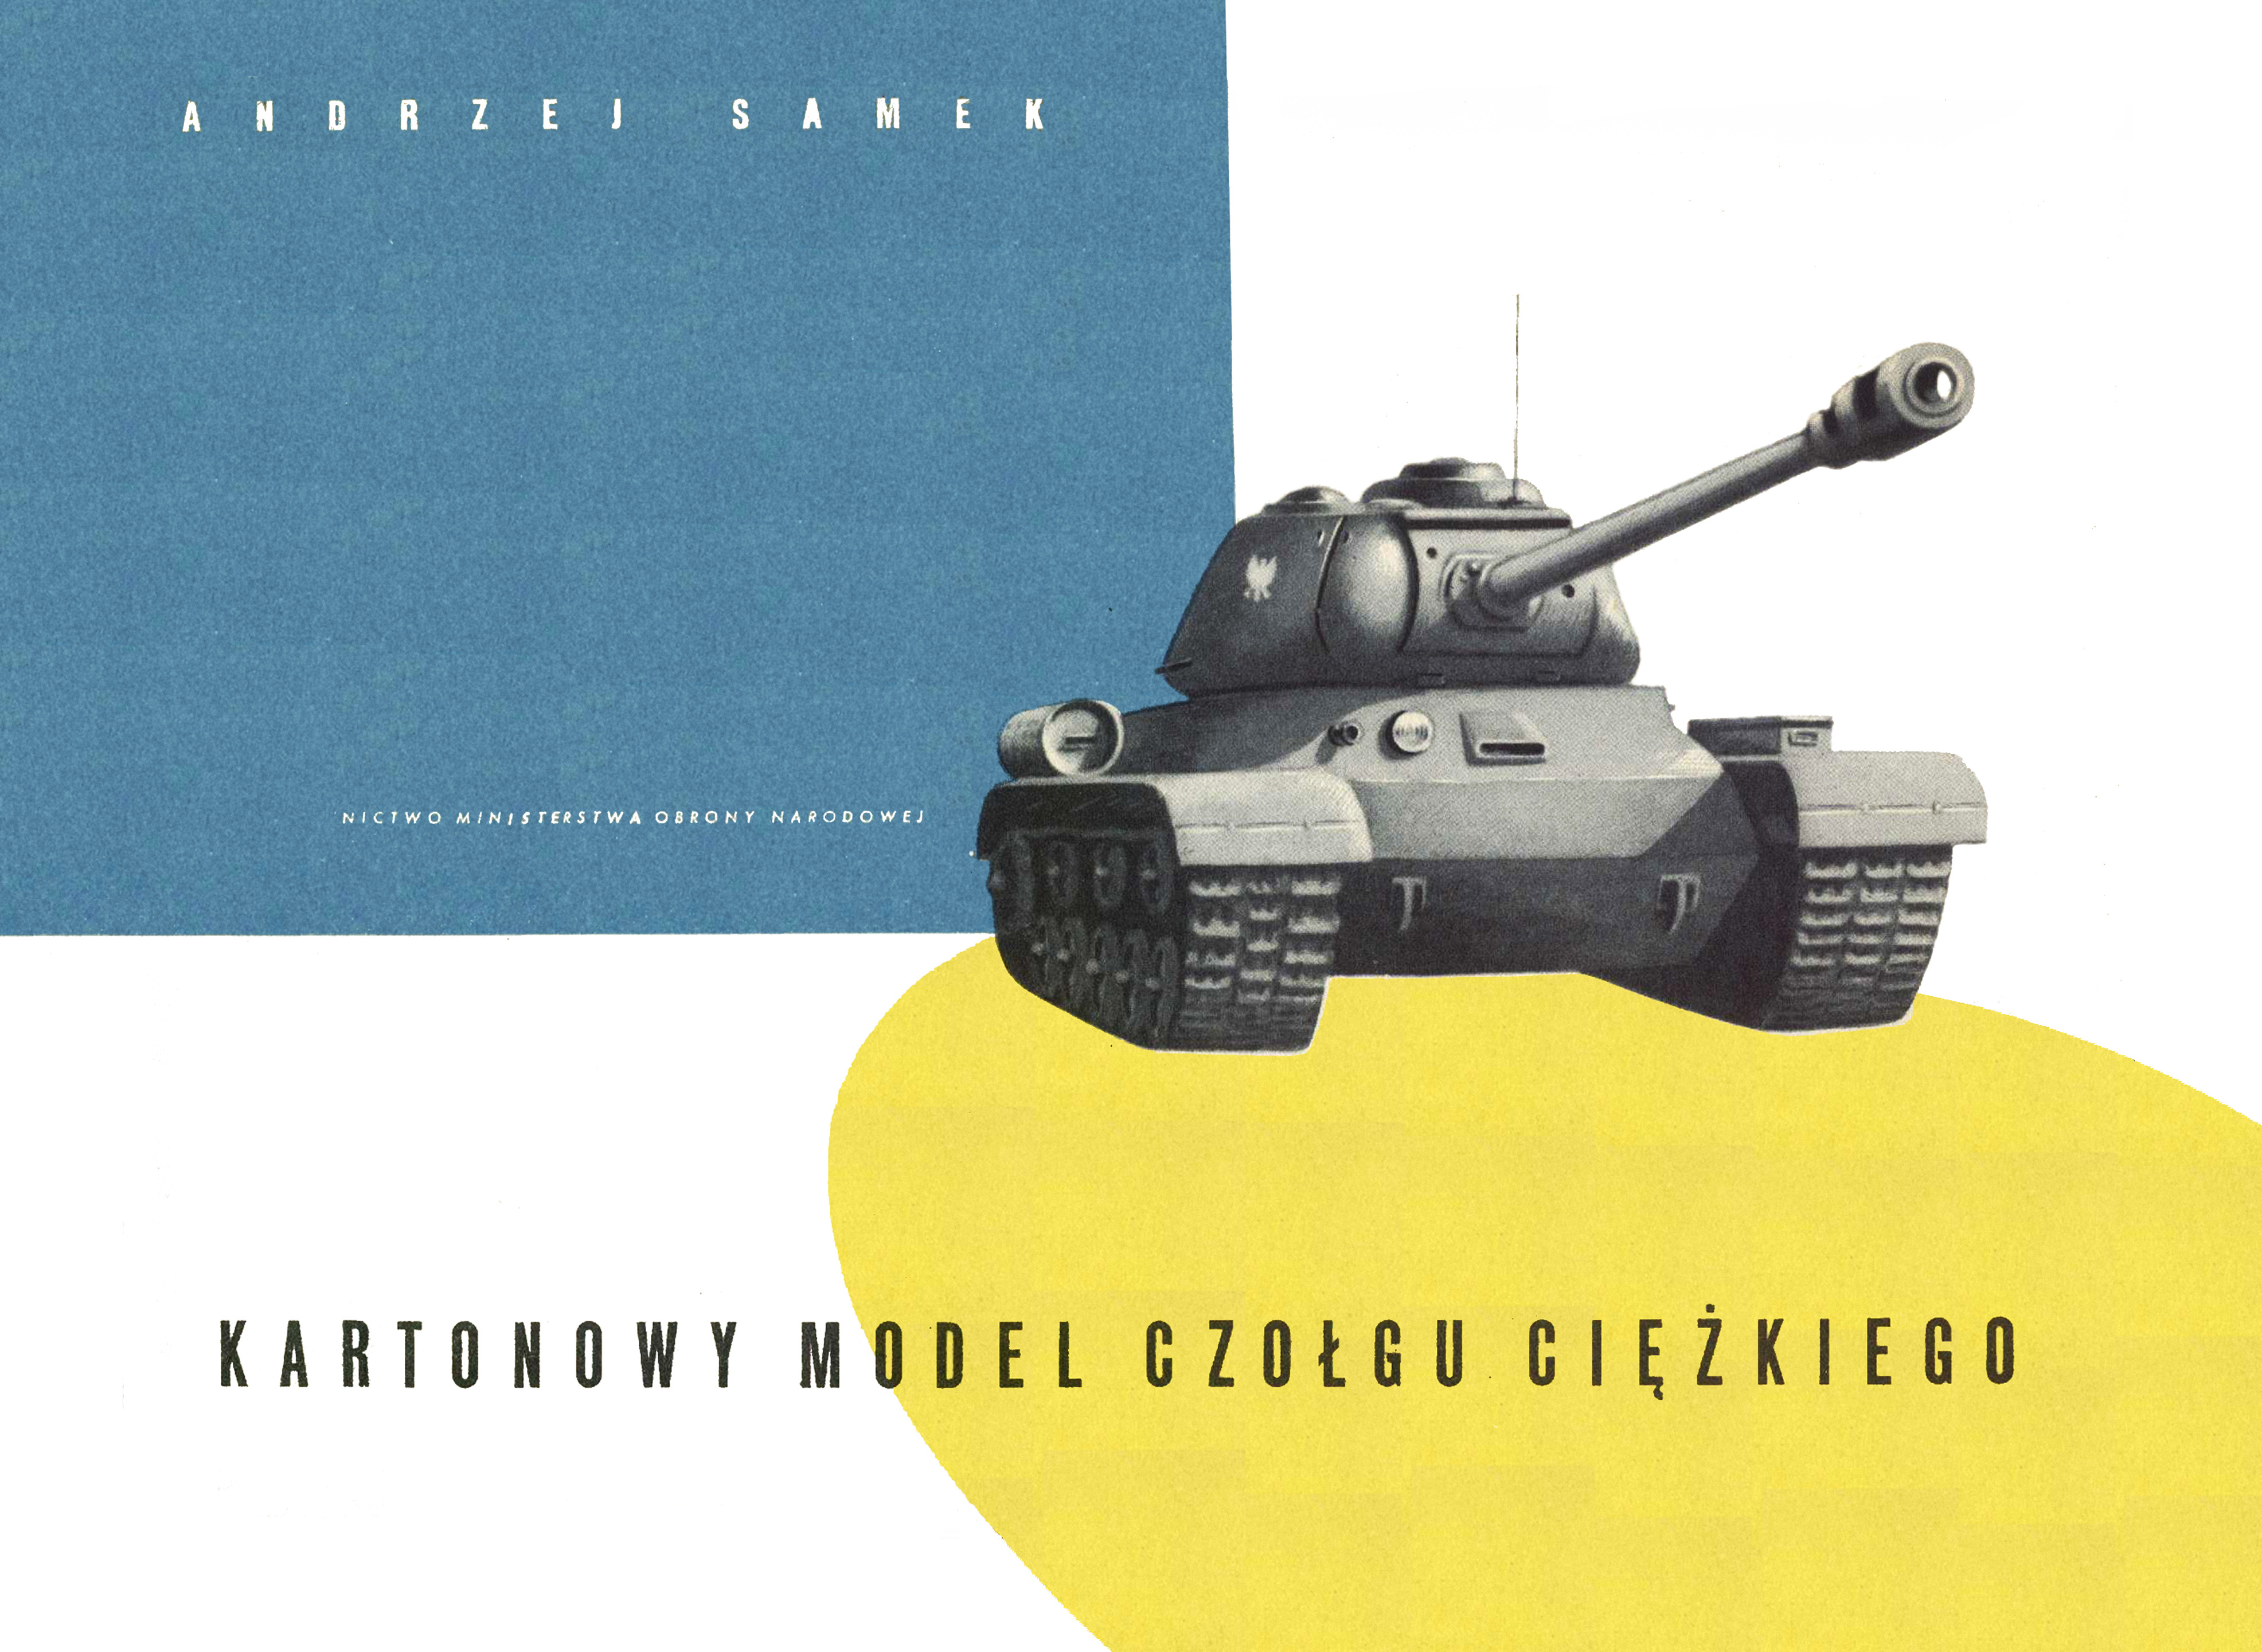 MON - Kartonowy model czołgu ciężkiego.jpg